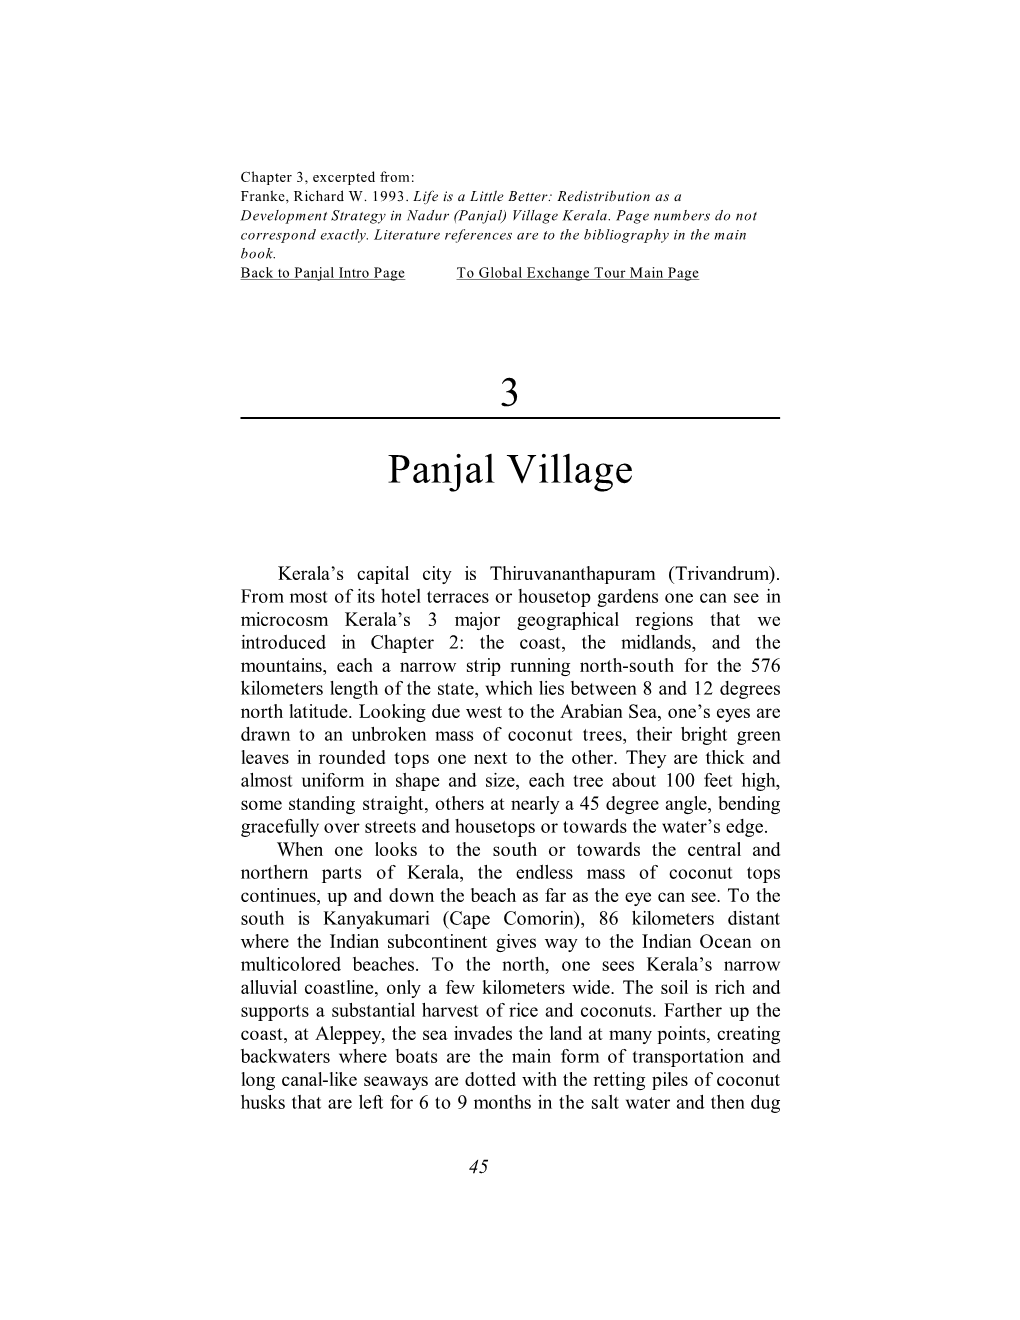 3 Panjal Village